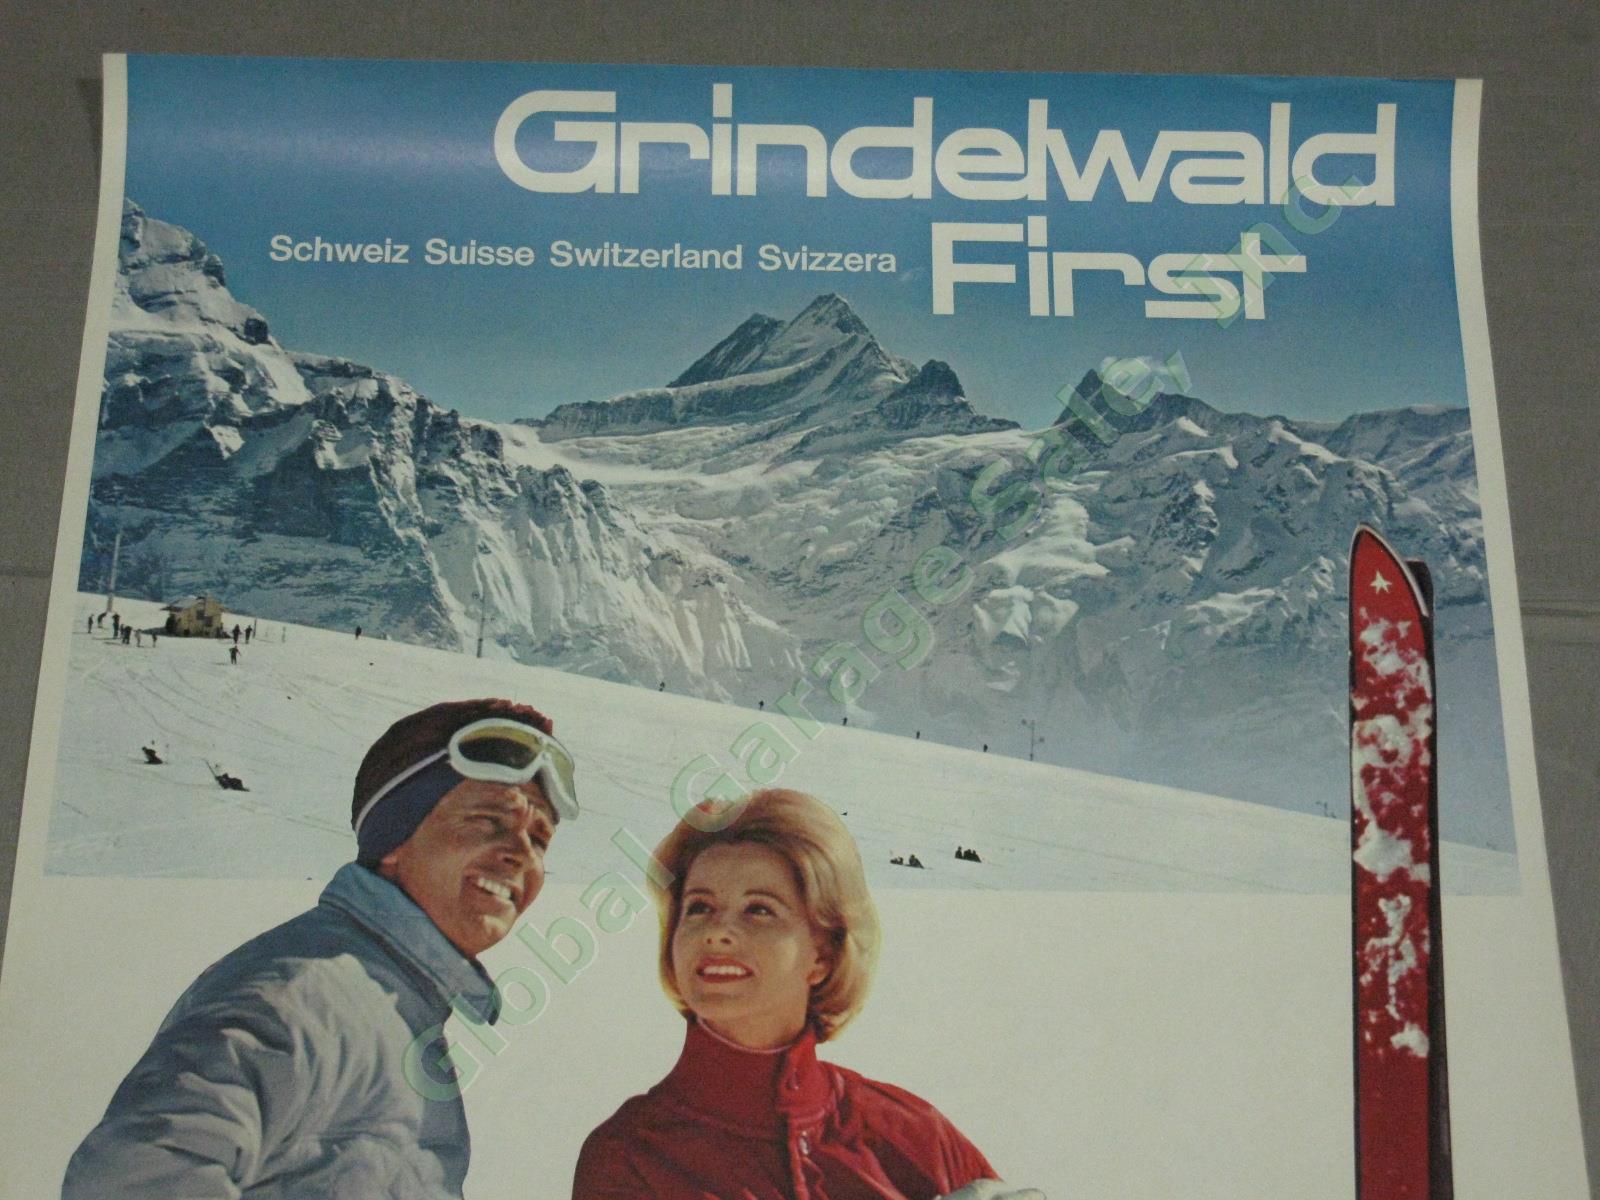 Vtg 1960s Swiss Travel Ski Poster Grindelwald First Bogner Clothing Switzerland 1